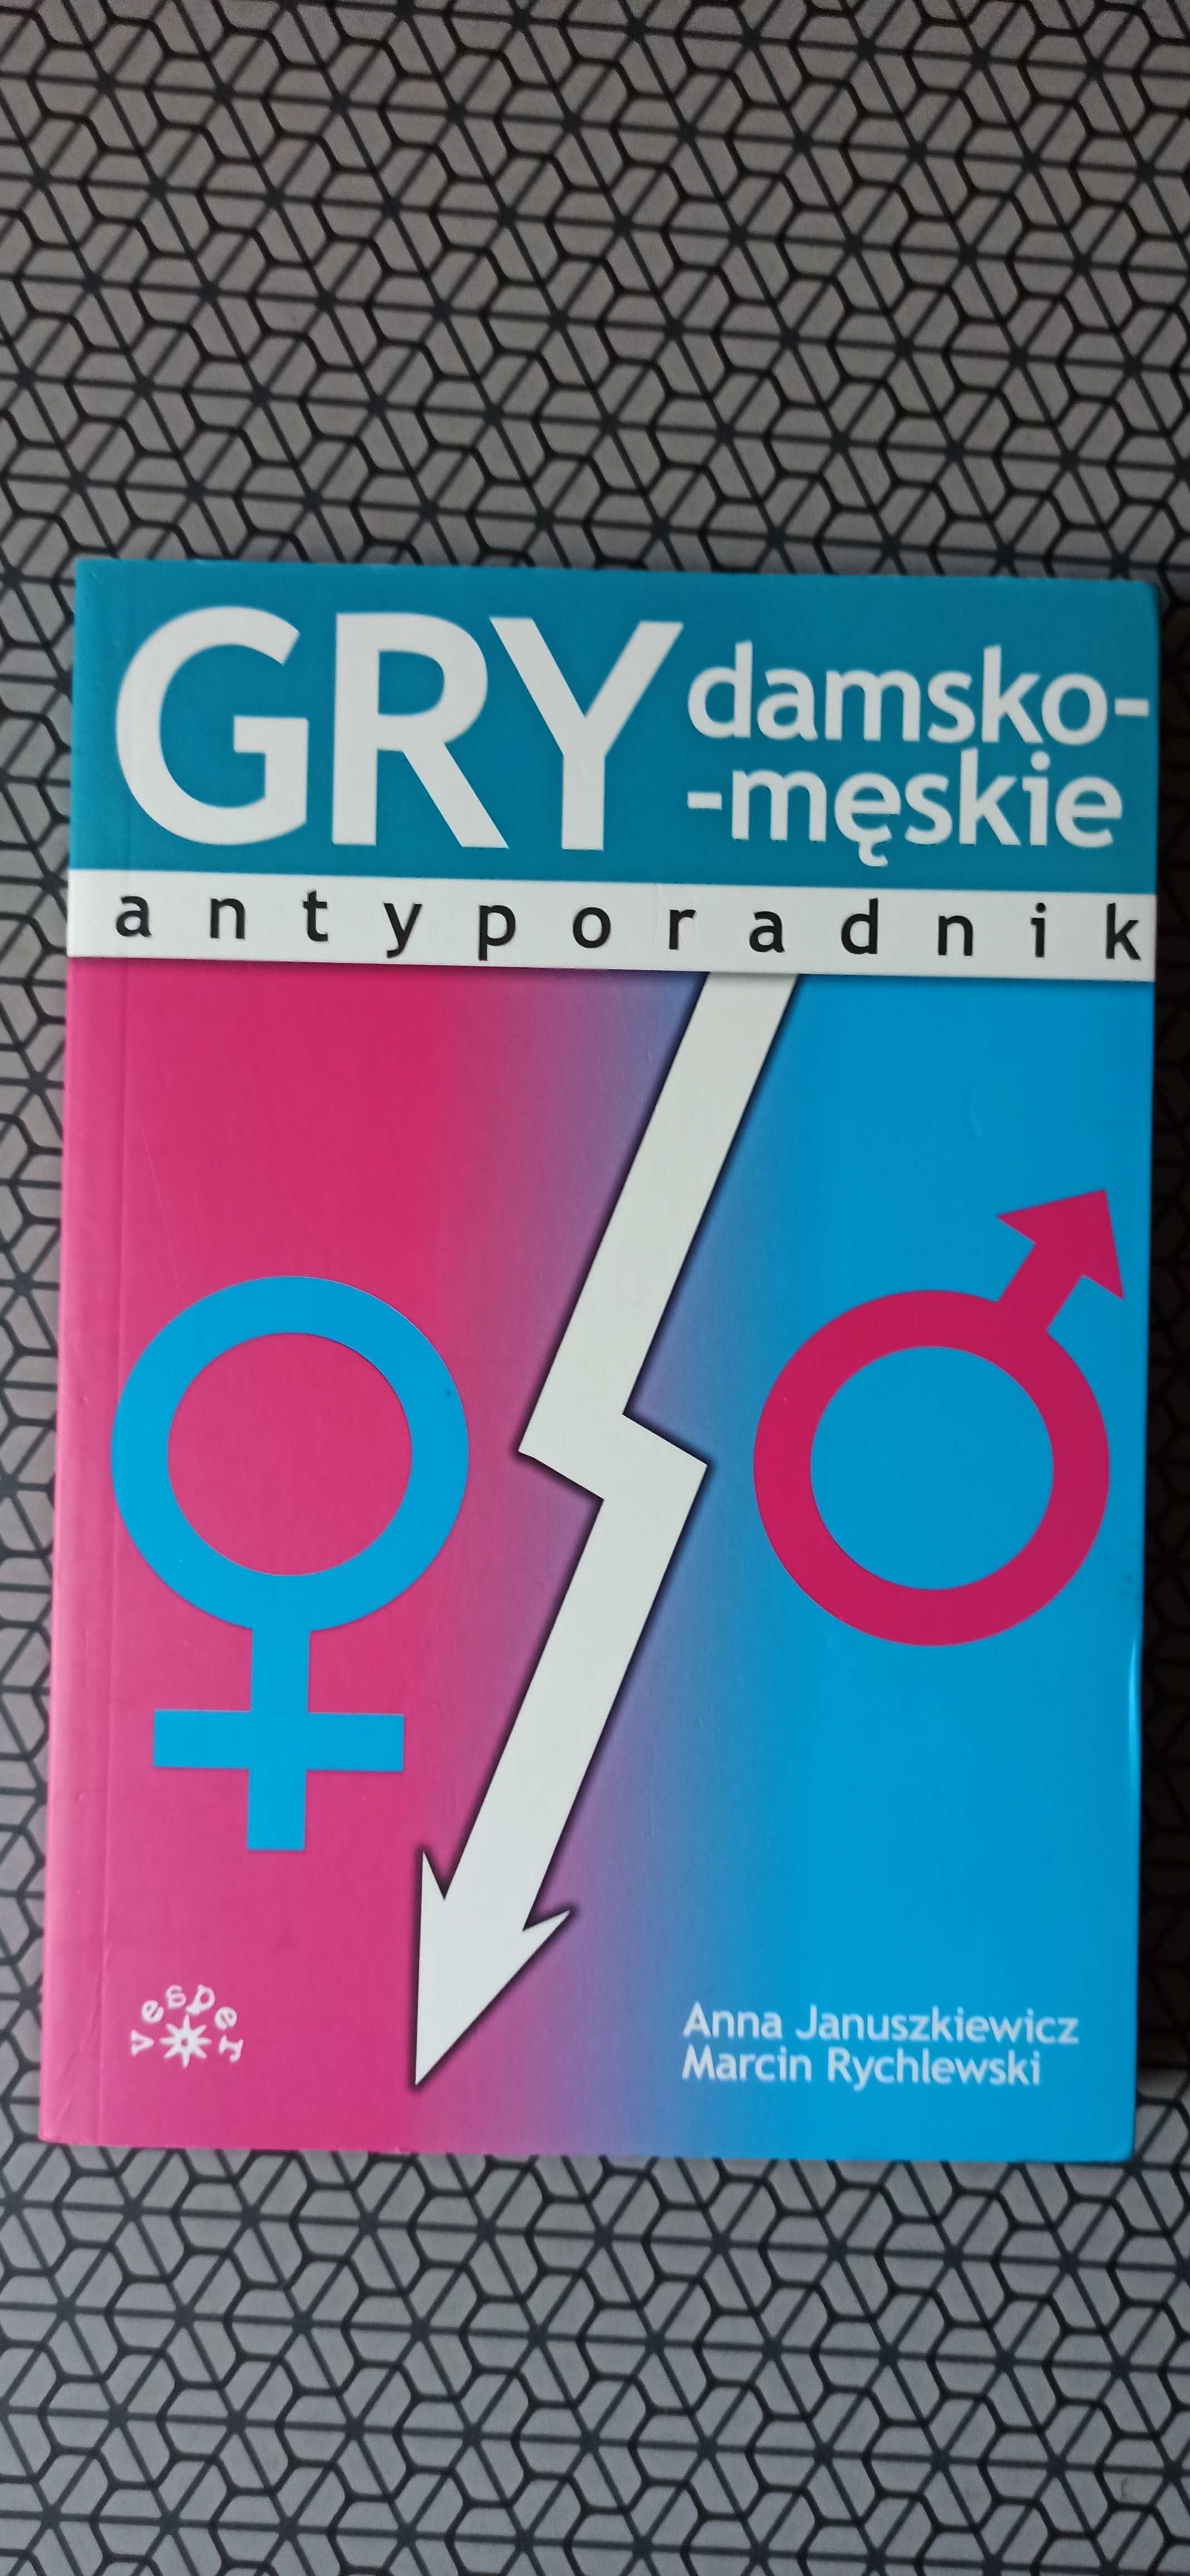 GRY damsko-męskie - antyporadnik